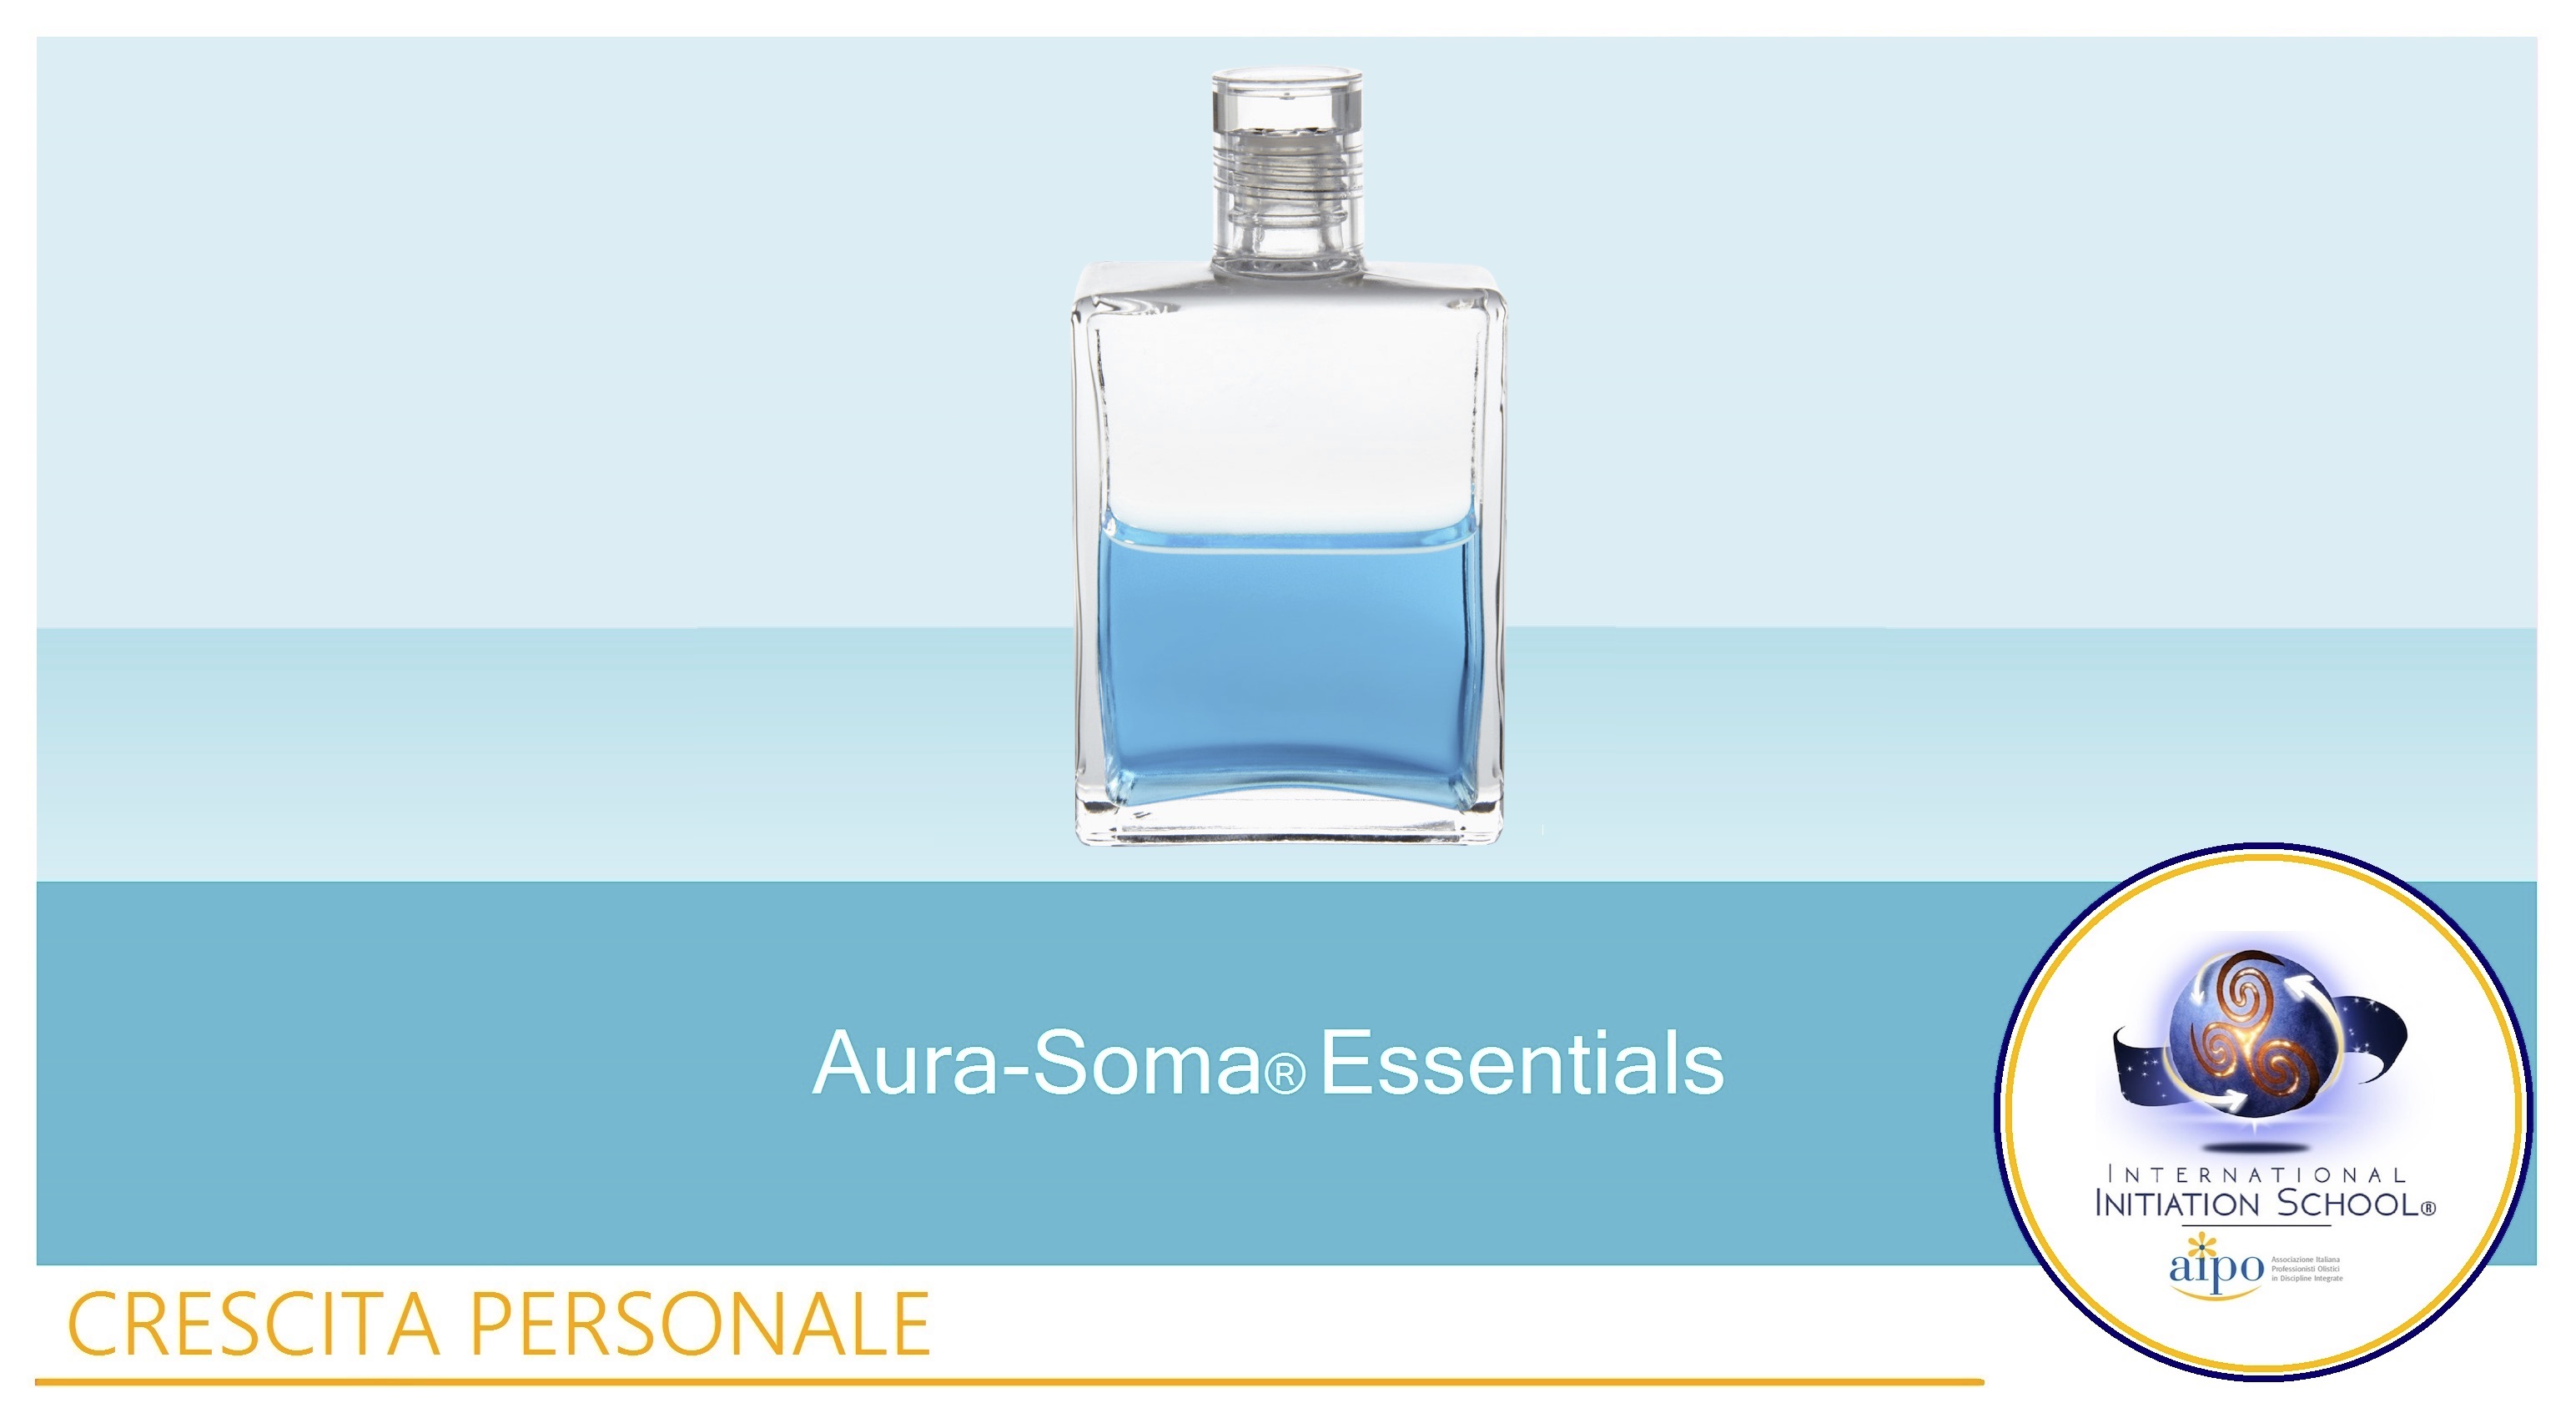 Aura-Soma® Essentials